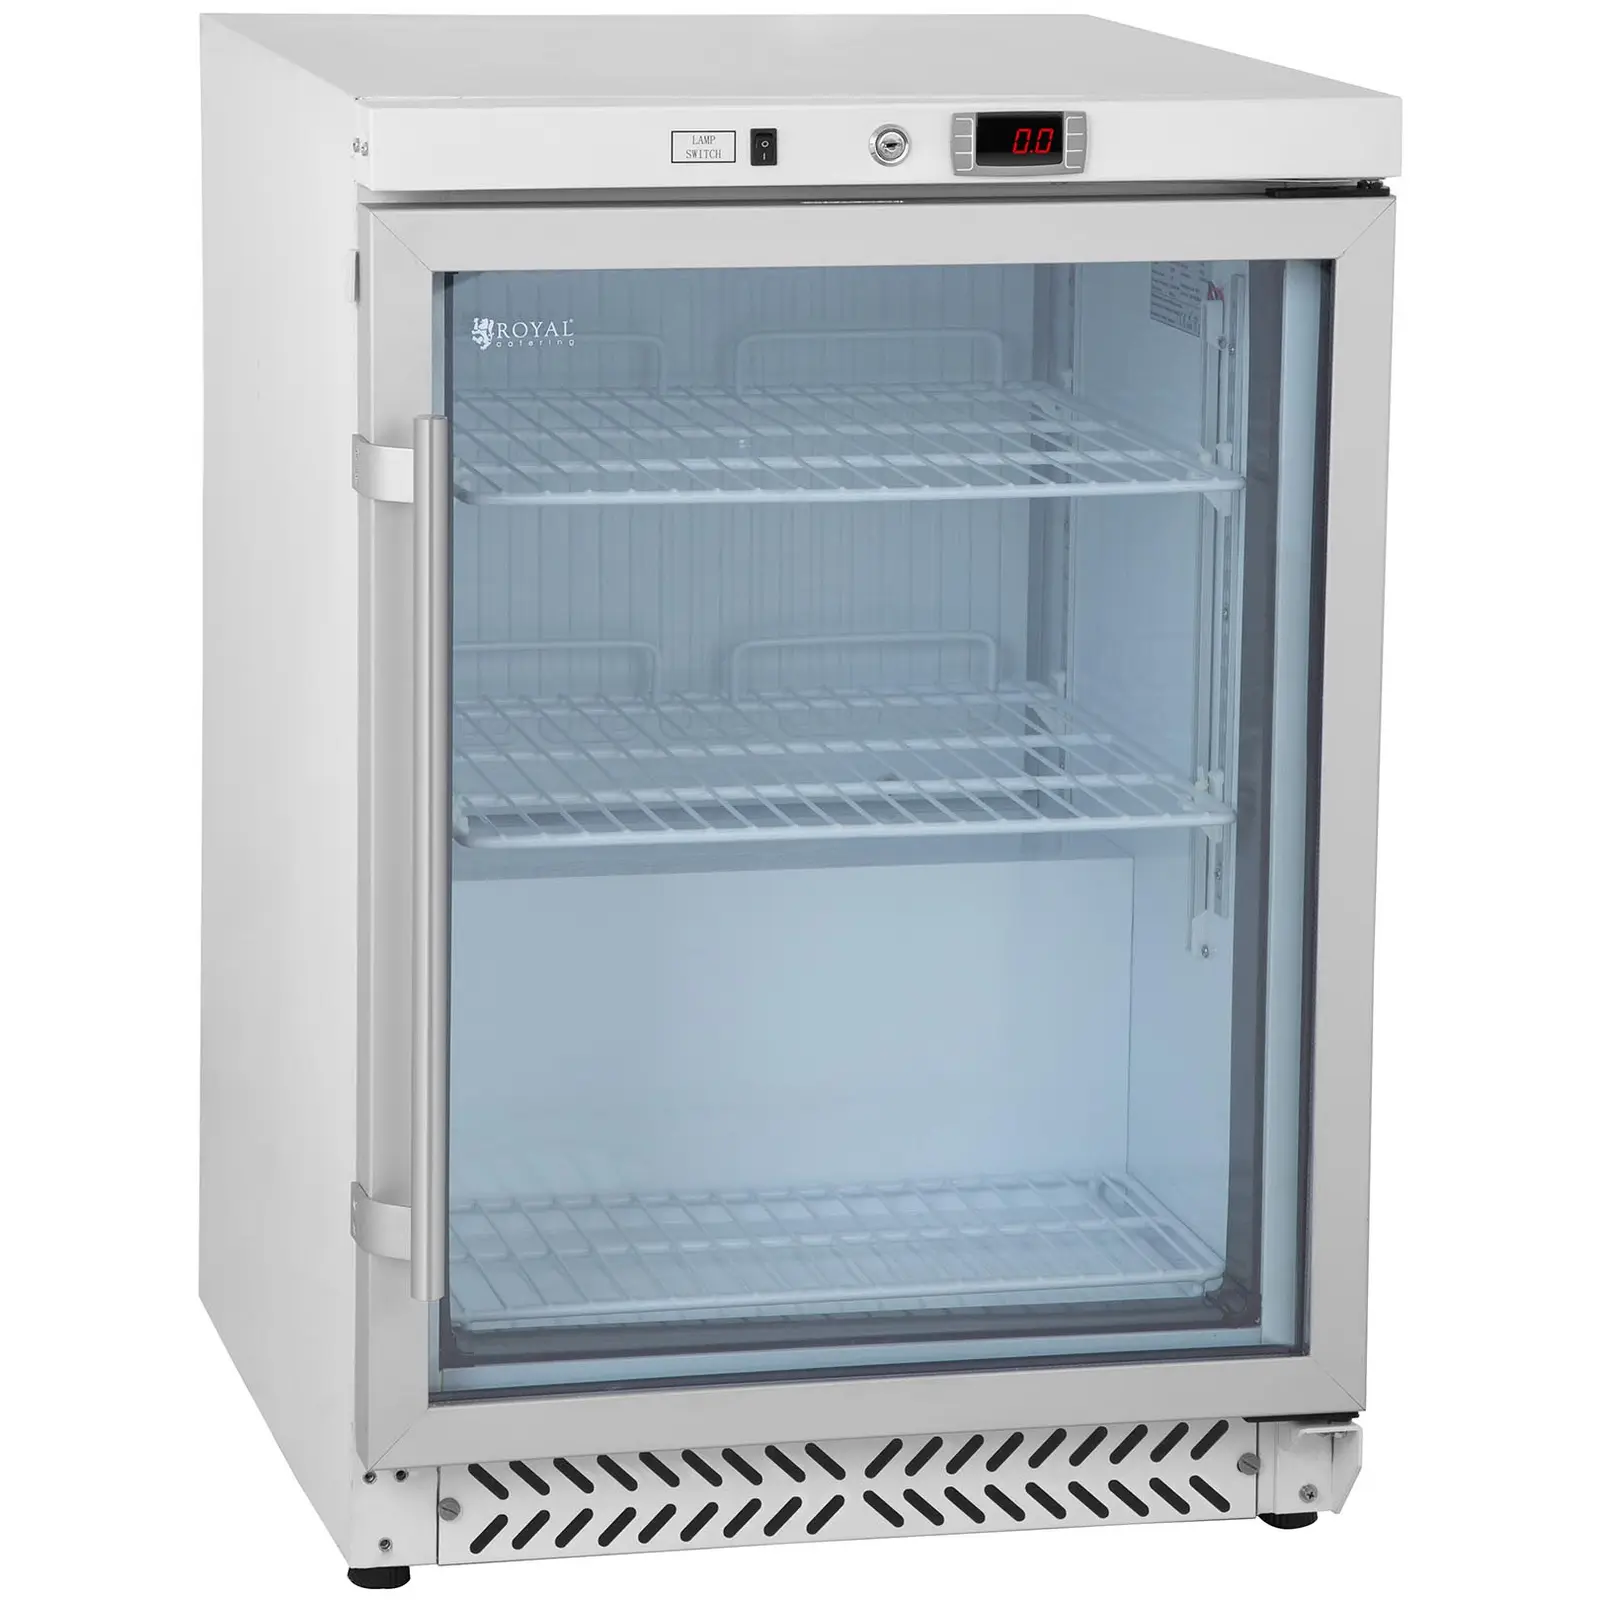 Glass door fridge - bottle fridge - 170 L